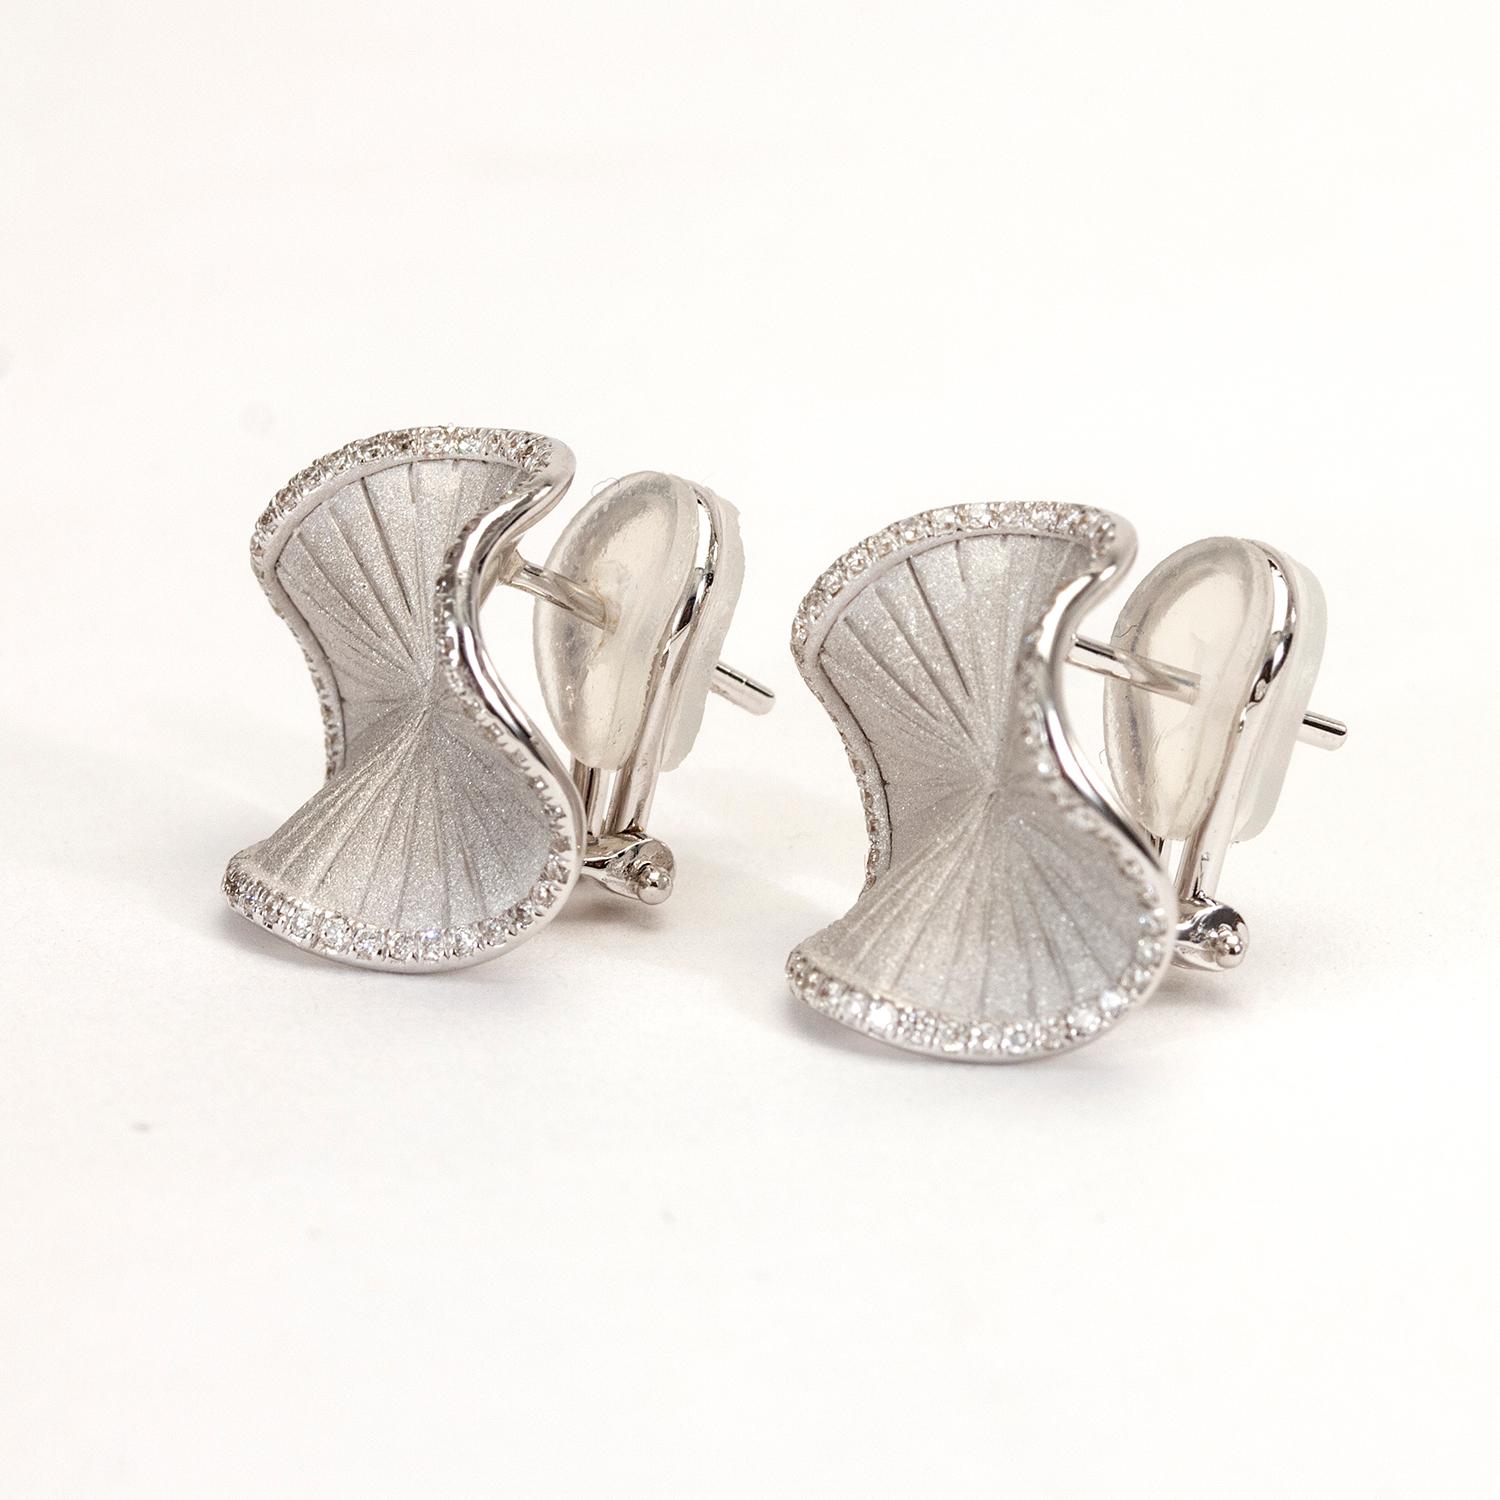 sultana earrings